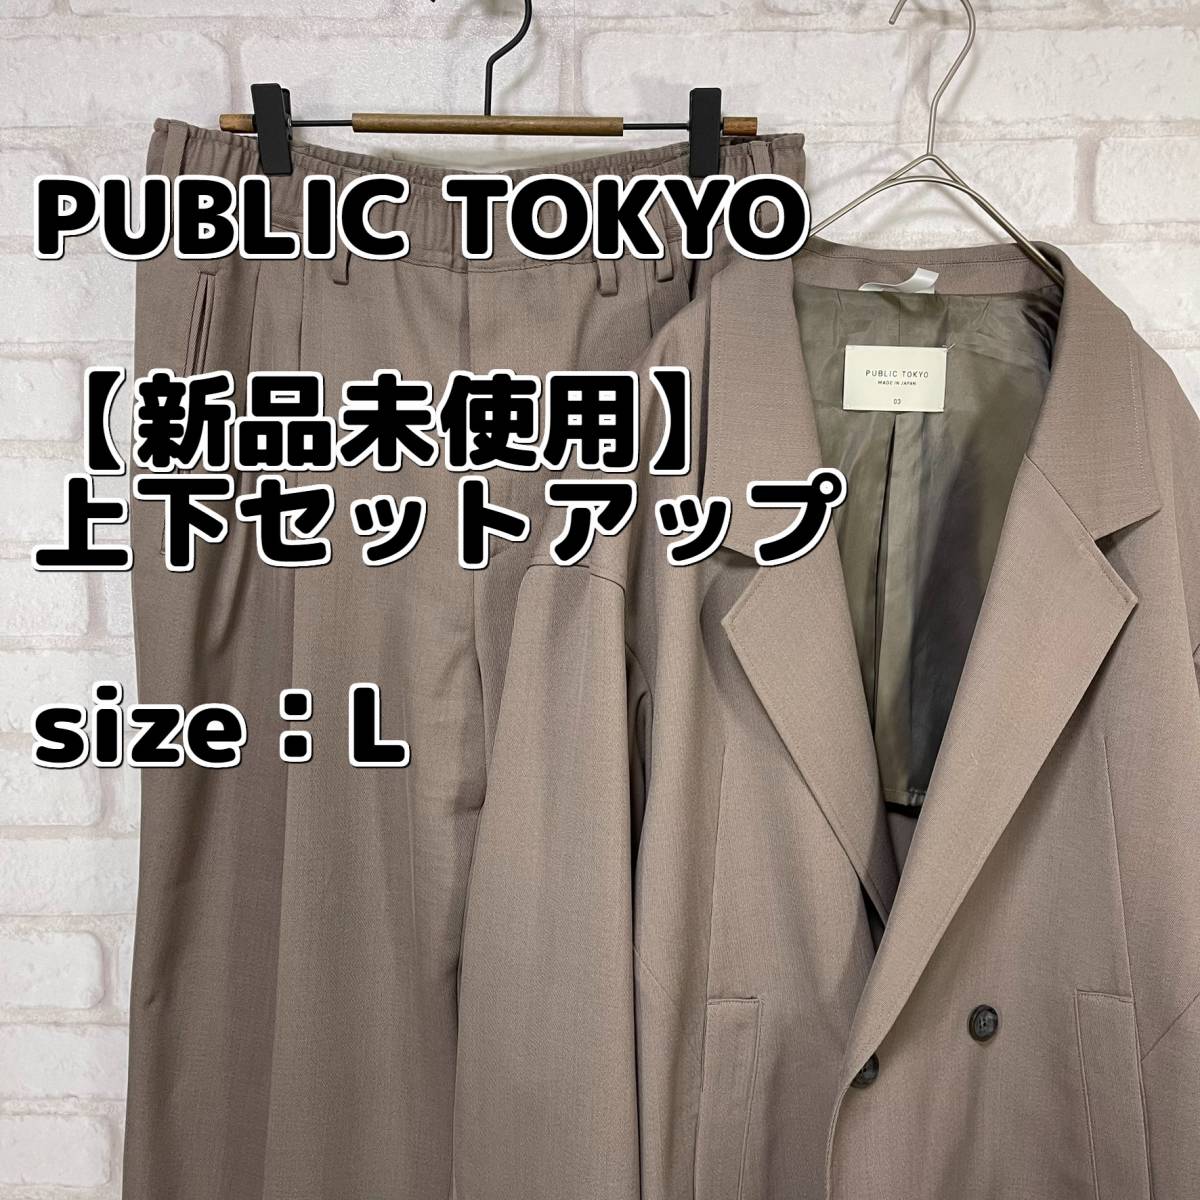 【新品未使用】スーツ上下 セットアップ PUBLIC TOKYO Lサイズ ジャケット パンツ 入学式 卒業式 入社式 新社会人 ビジネス カジュアル